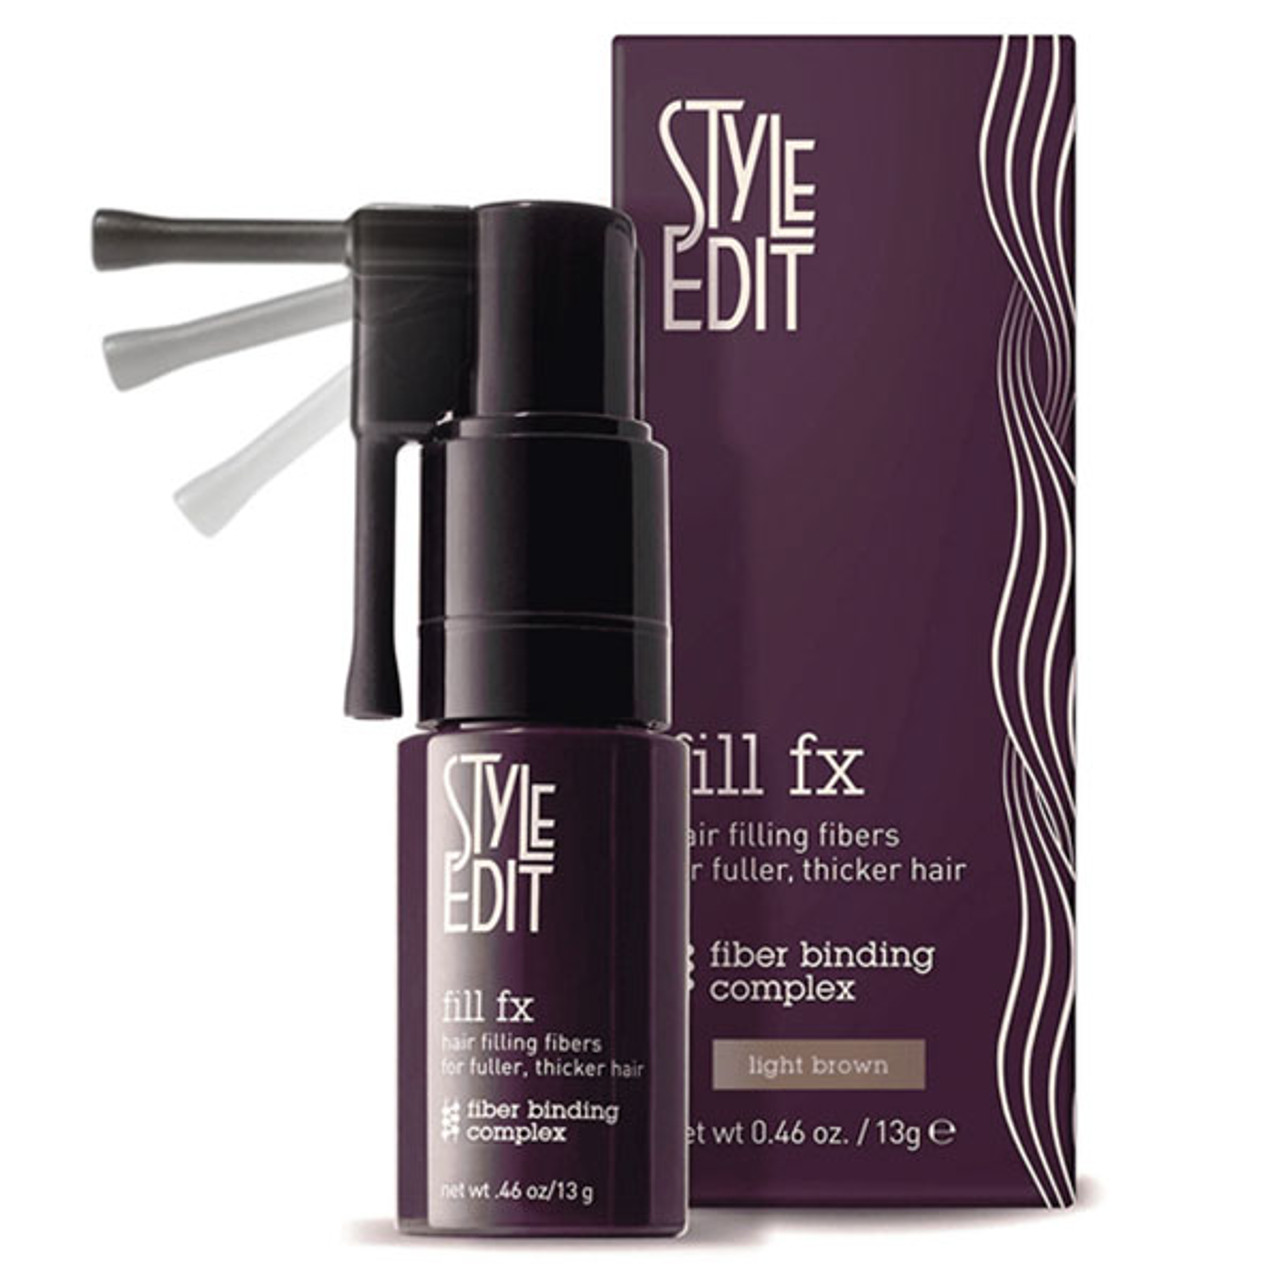 Style Edit Fill FX Fiber Binding Complex Spray For Bald Spot